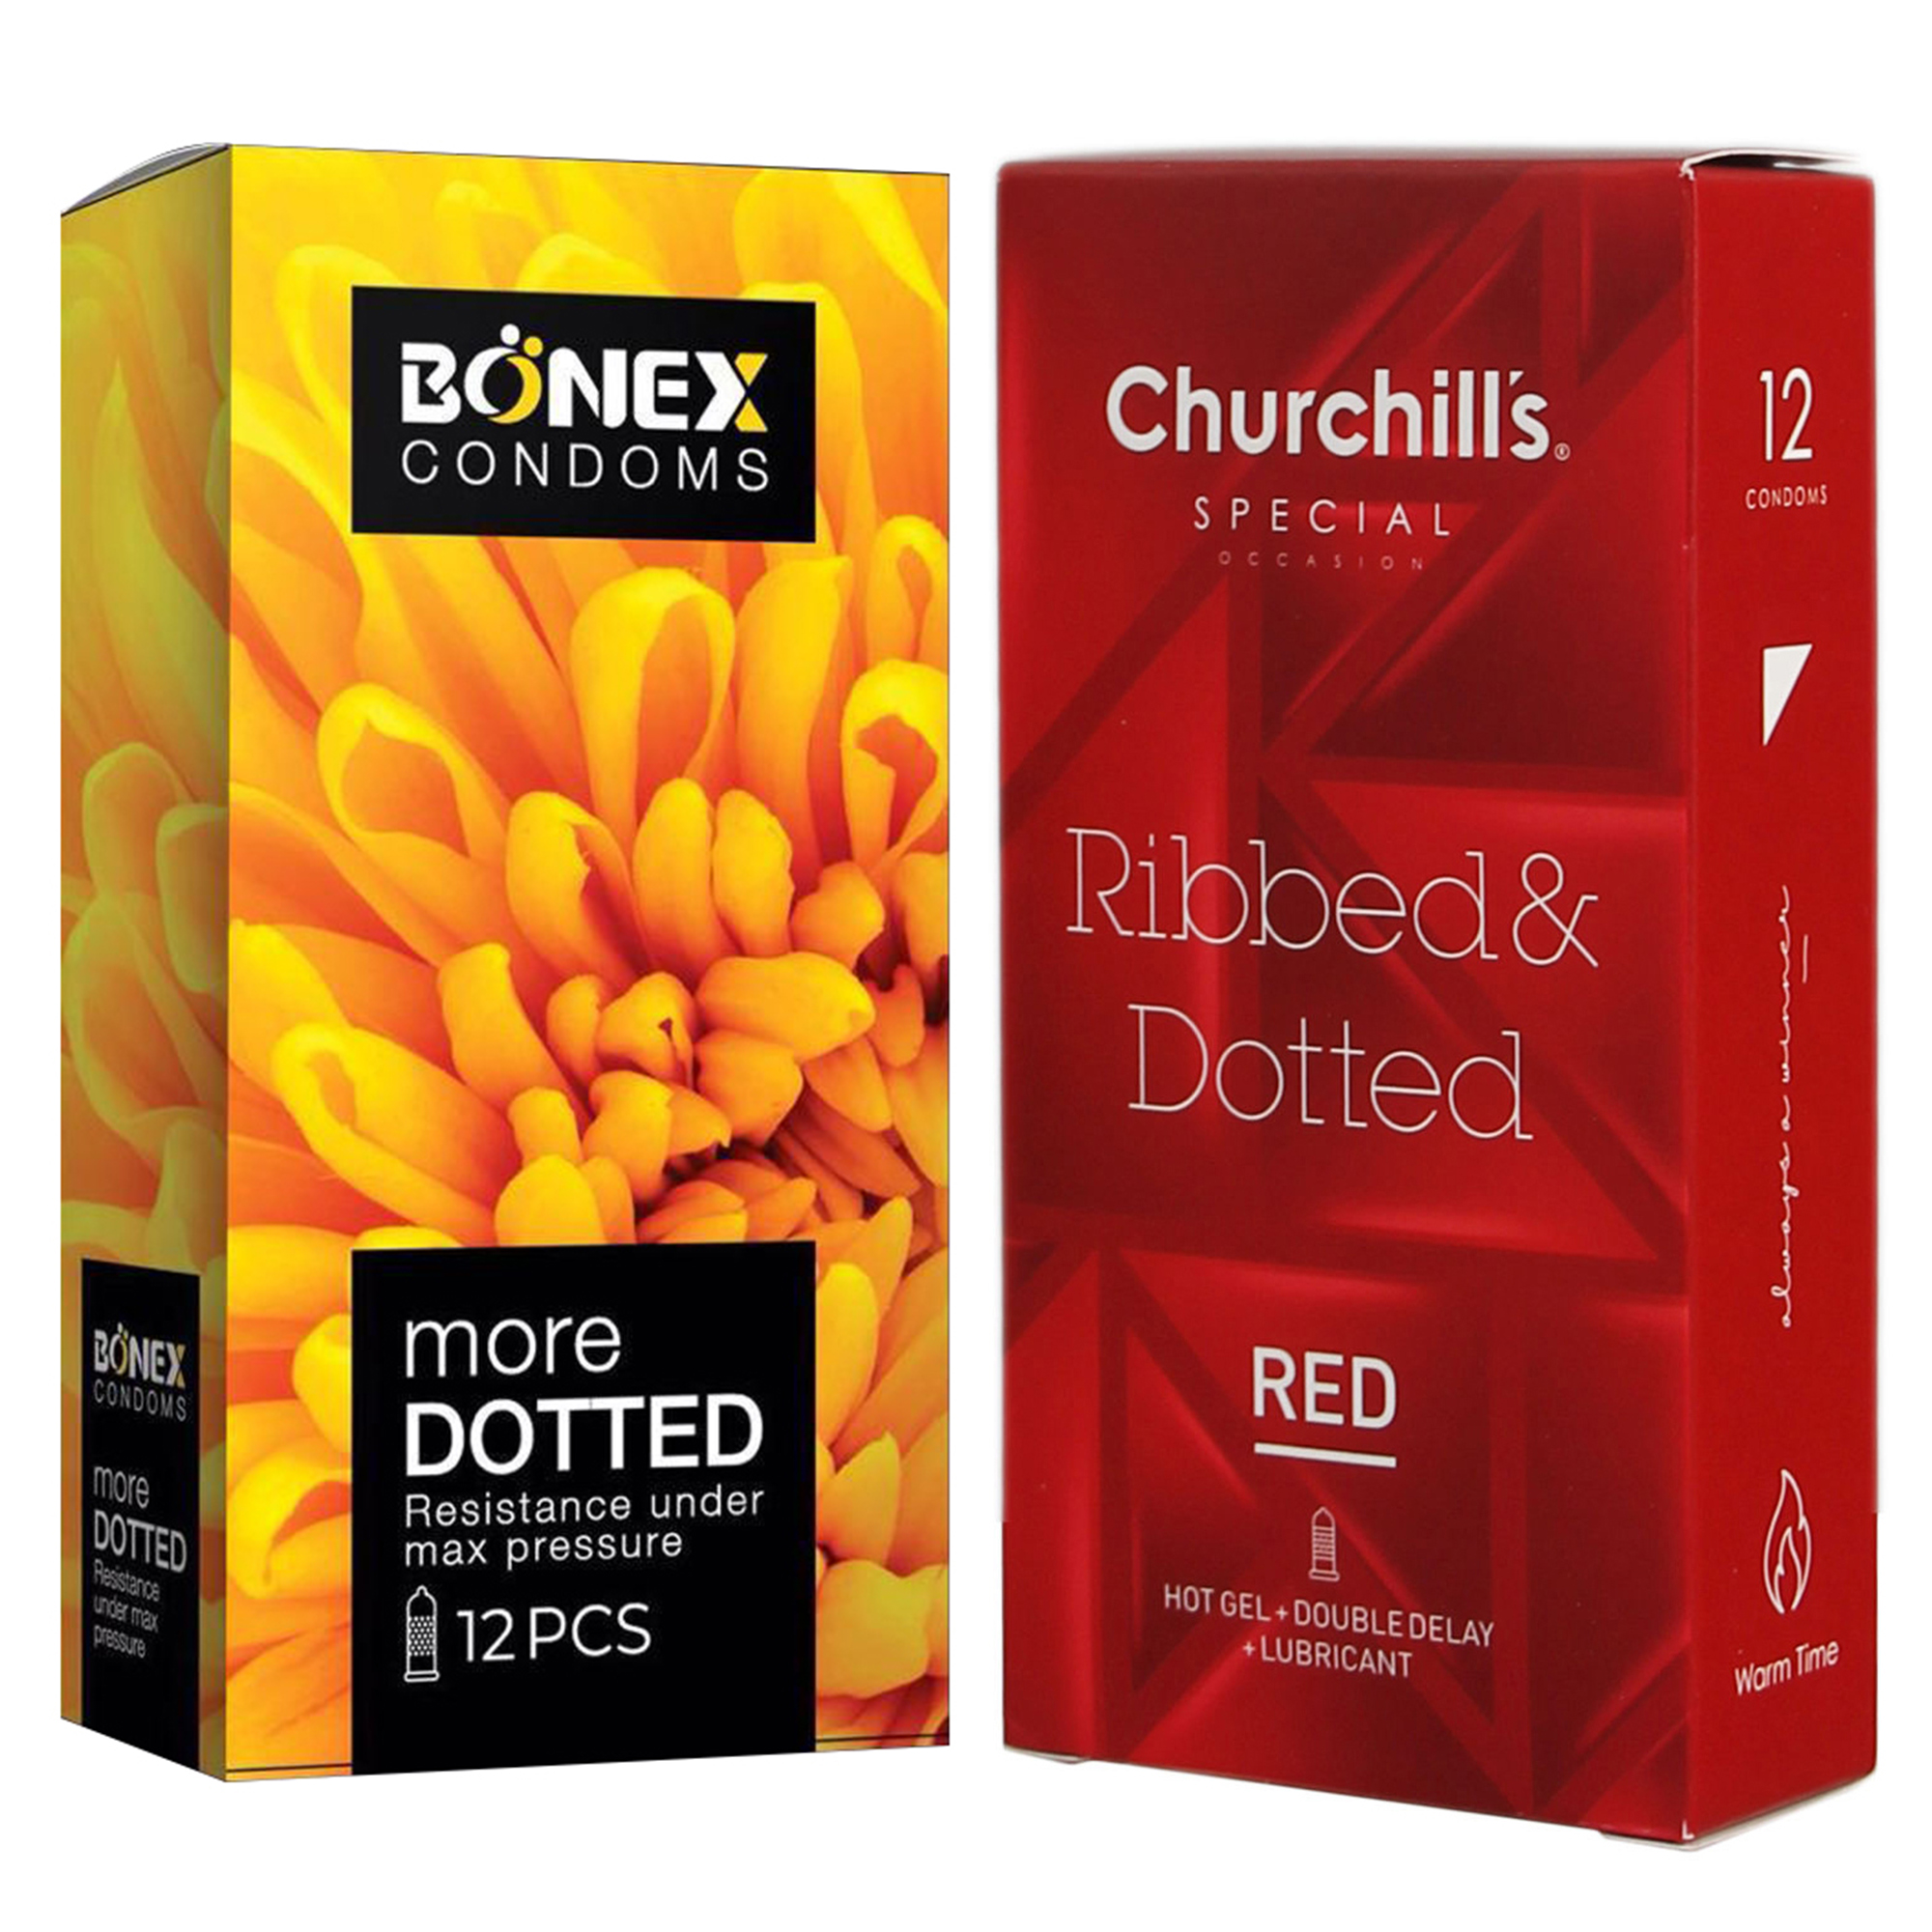 کاندوم چرچیلز مدل Ribbed & Dotted Red بسته 12 عددی به همراه کاندوم بونکس مدل More Dotted بسته 12 عددی 